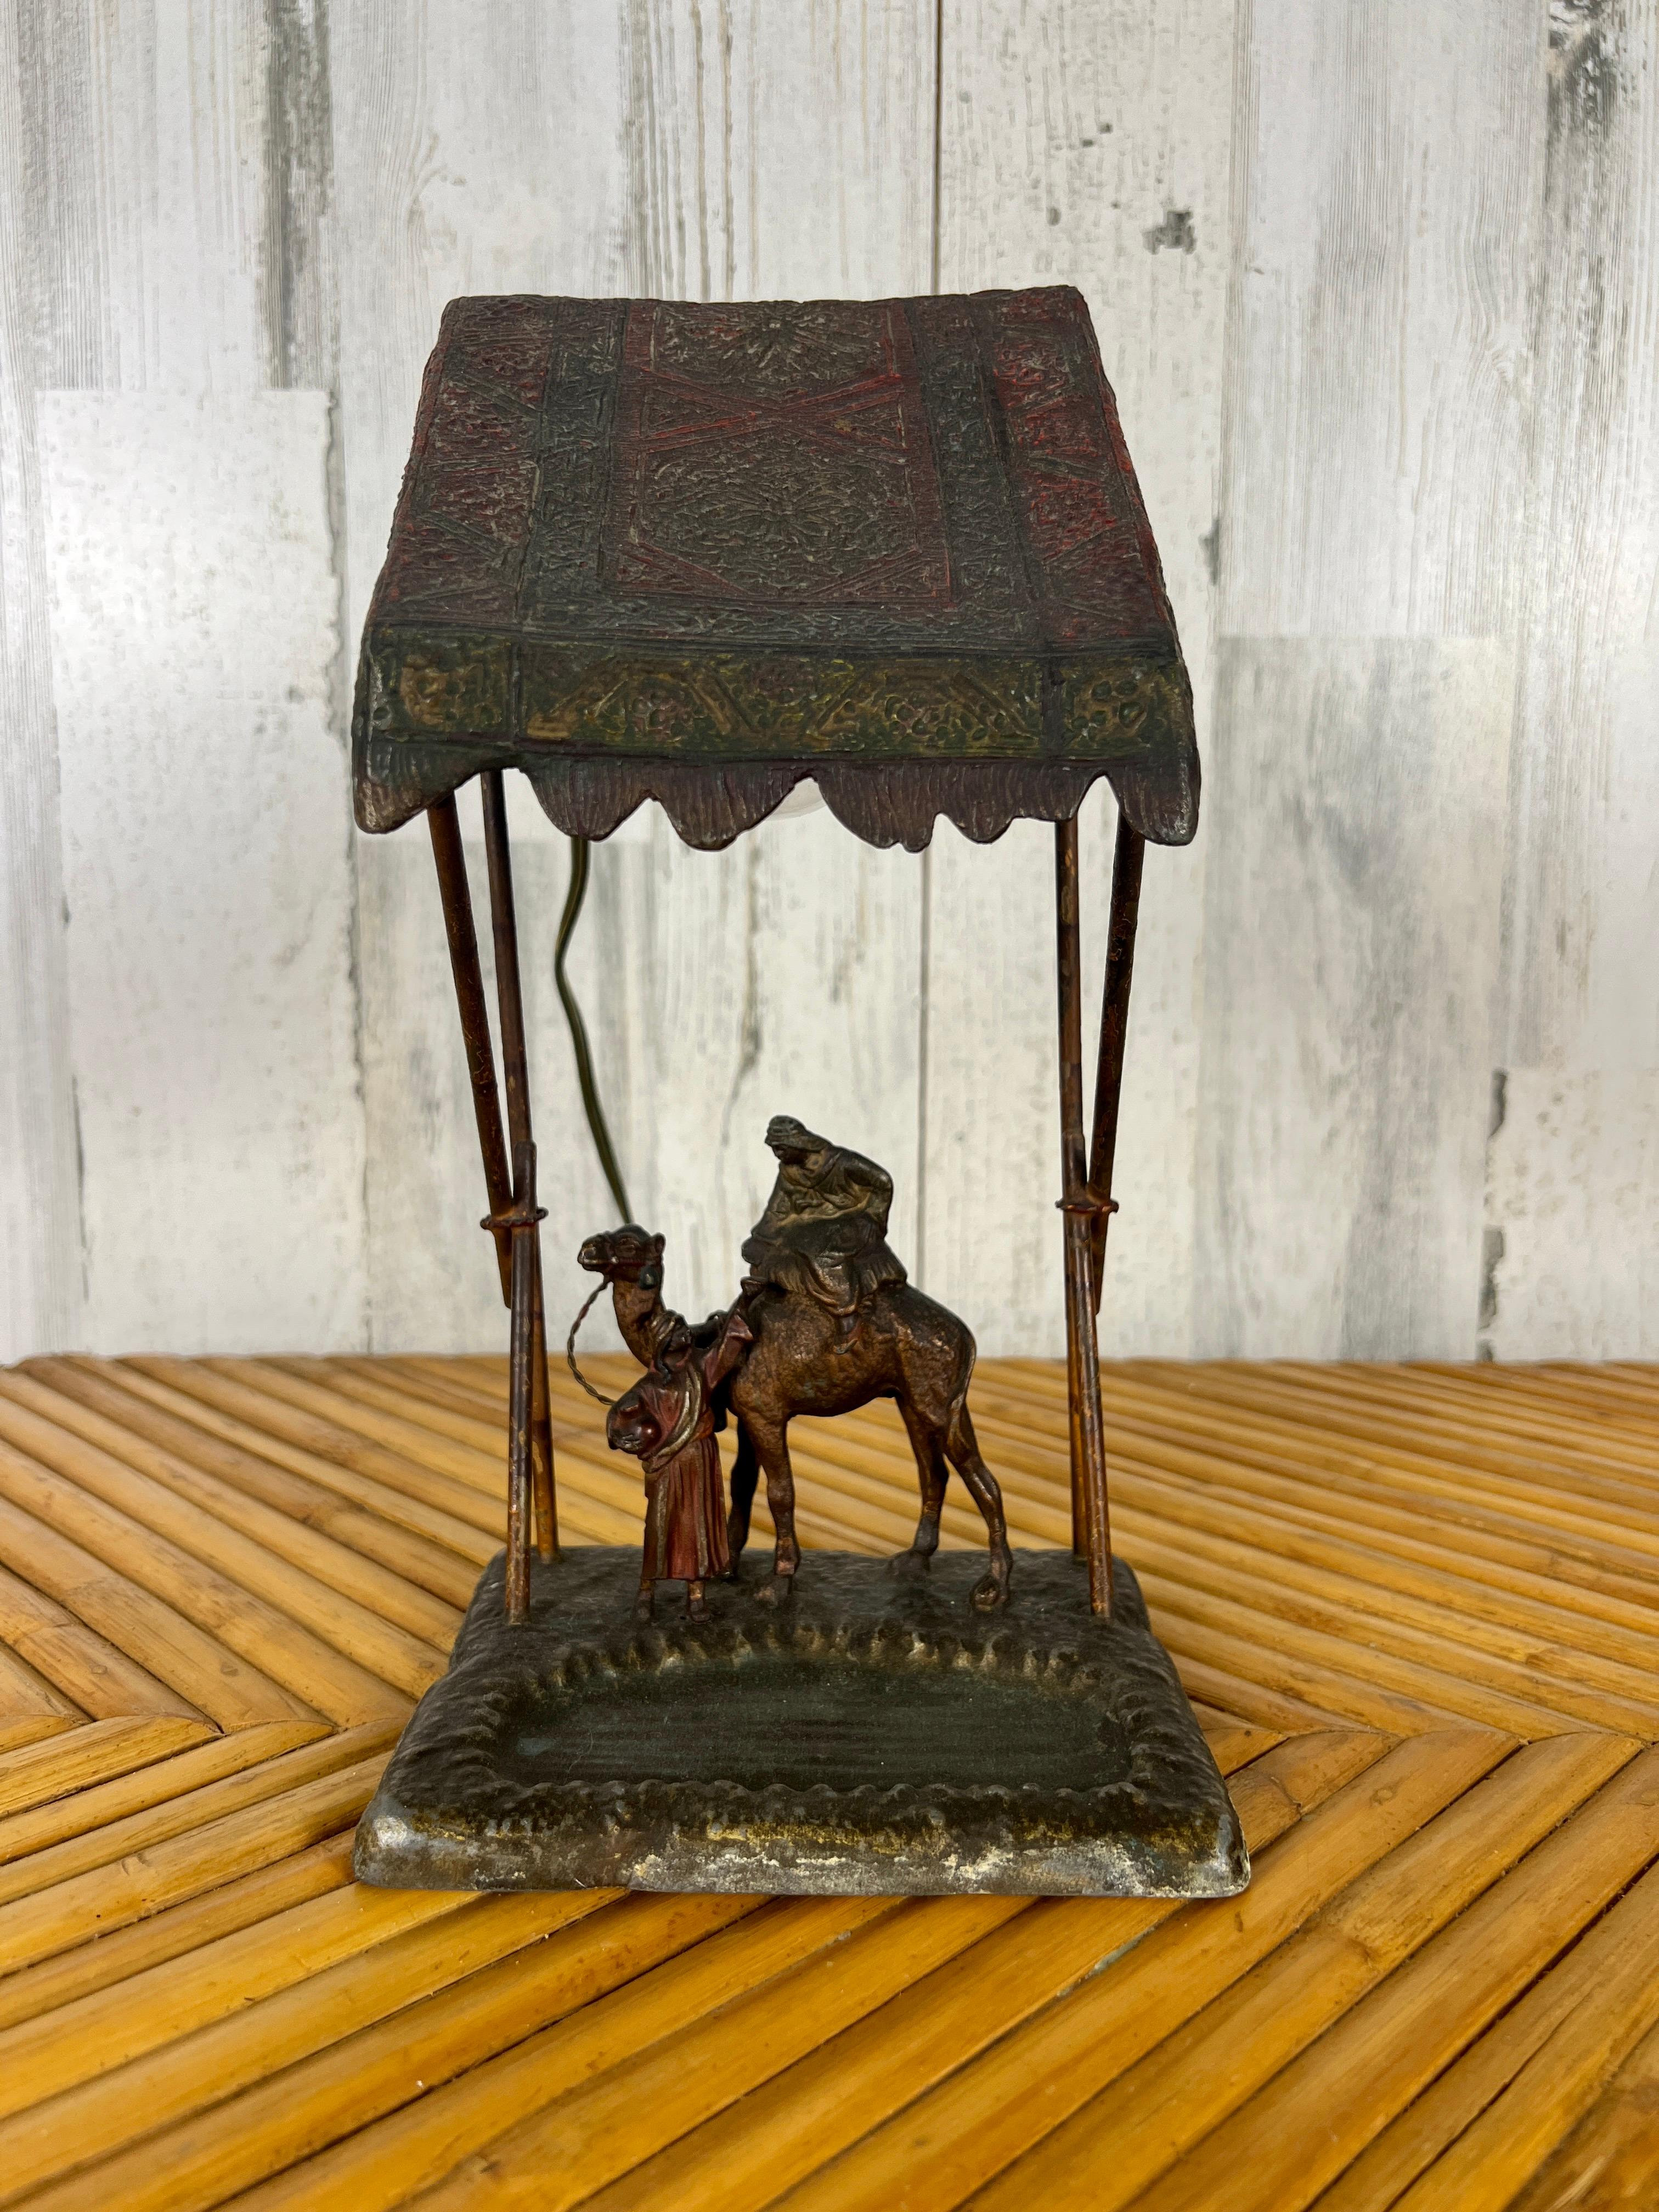 Lampe orientaliste viennoise en bronze peint à froid attribuée à Bergman représentant un homme du Moyen-Orient chevauchant un chameau au poste de traite de l'Oasis.